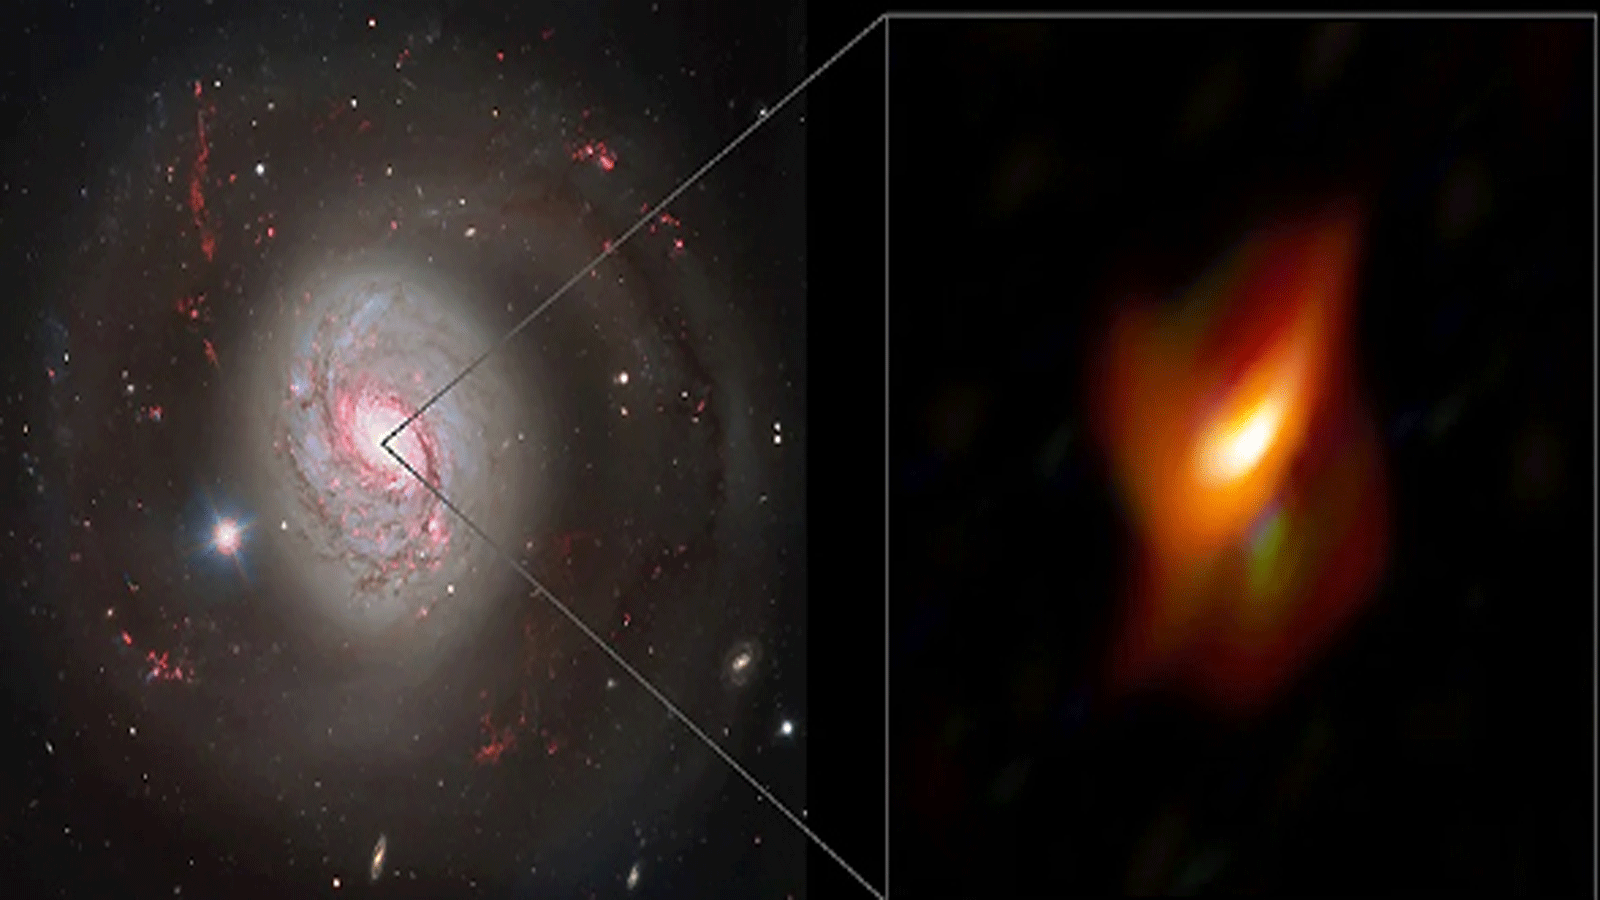 منظر للمجرة النشطة ميسييه 77، وفي اللوحة اليمنى، منظر متفجر للمنطقة الداخلية للغاية لهذه المجرة. علماء الفلك يحصلون لأول مرة على صورة مفصلة لنواة مجرة ​​نشطة، وهي بنية من الغبار والغاز تحيط بثقب أسود هائل